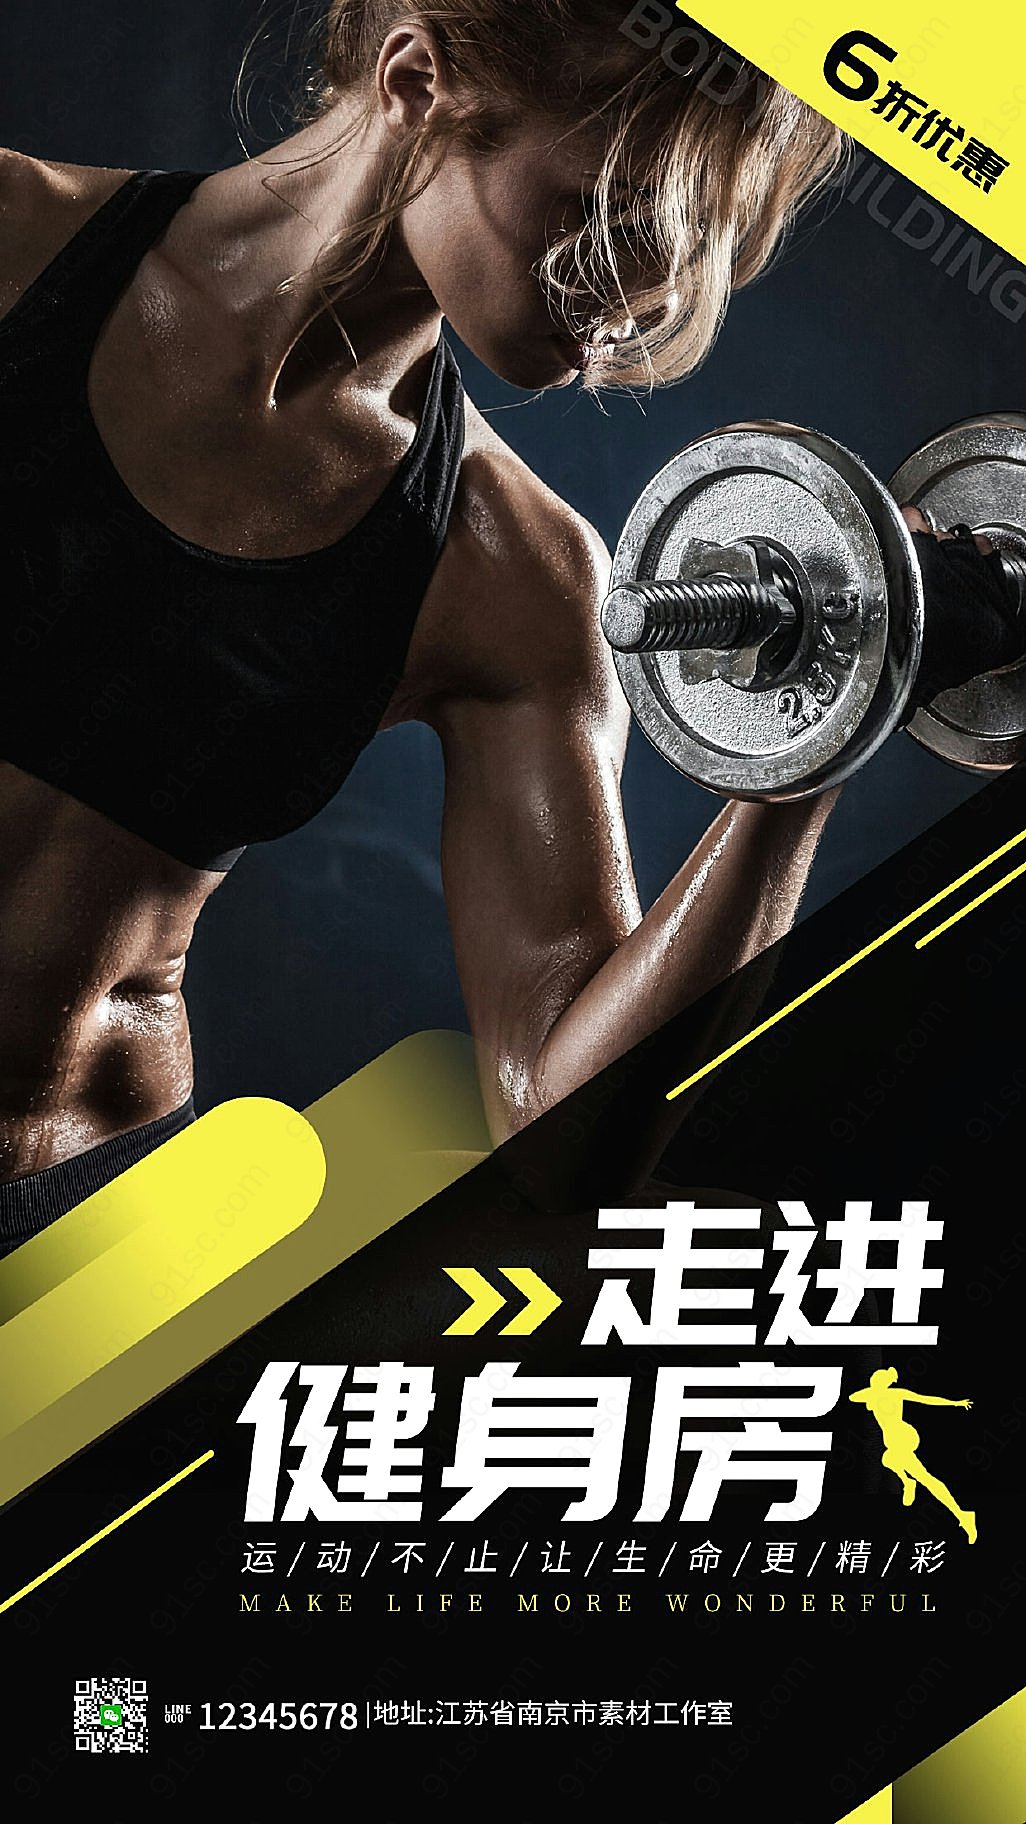 黑色背景健身房宣传海报让你感受到健身的乐趣与刺激新媒体用图下载